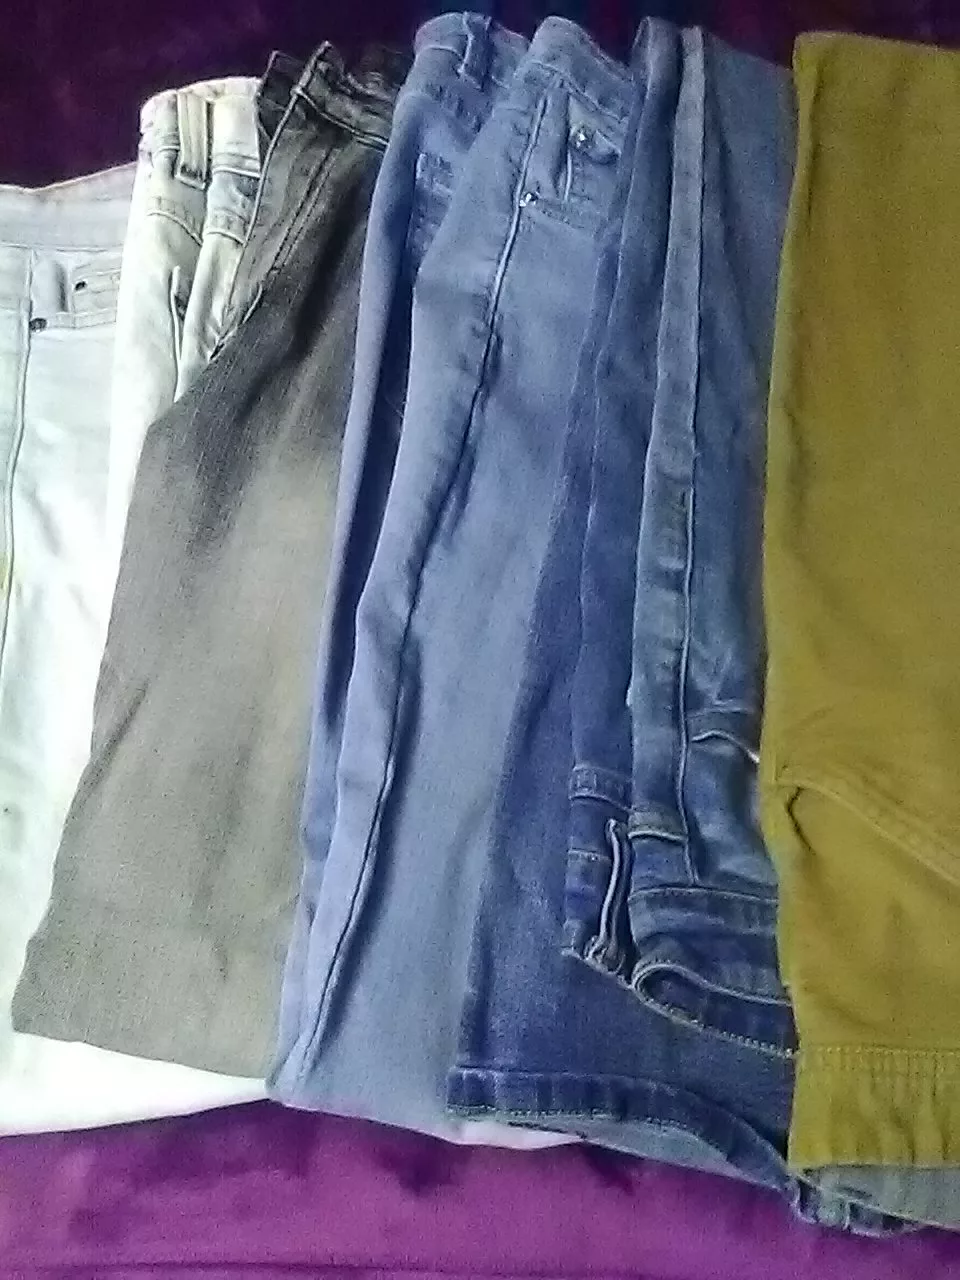 28-mens-jeans-6-pair-total-5-ea-13434-53232